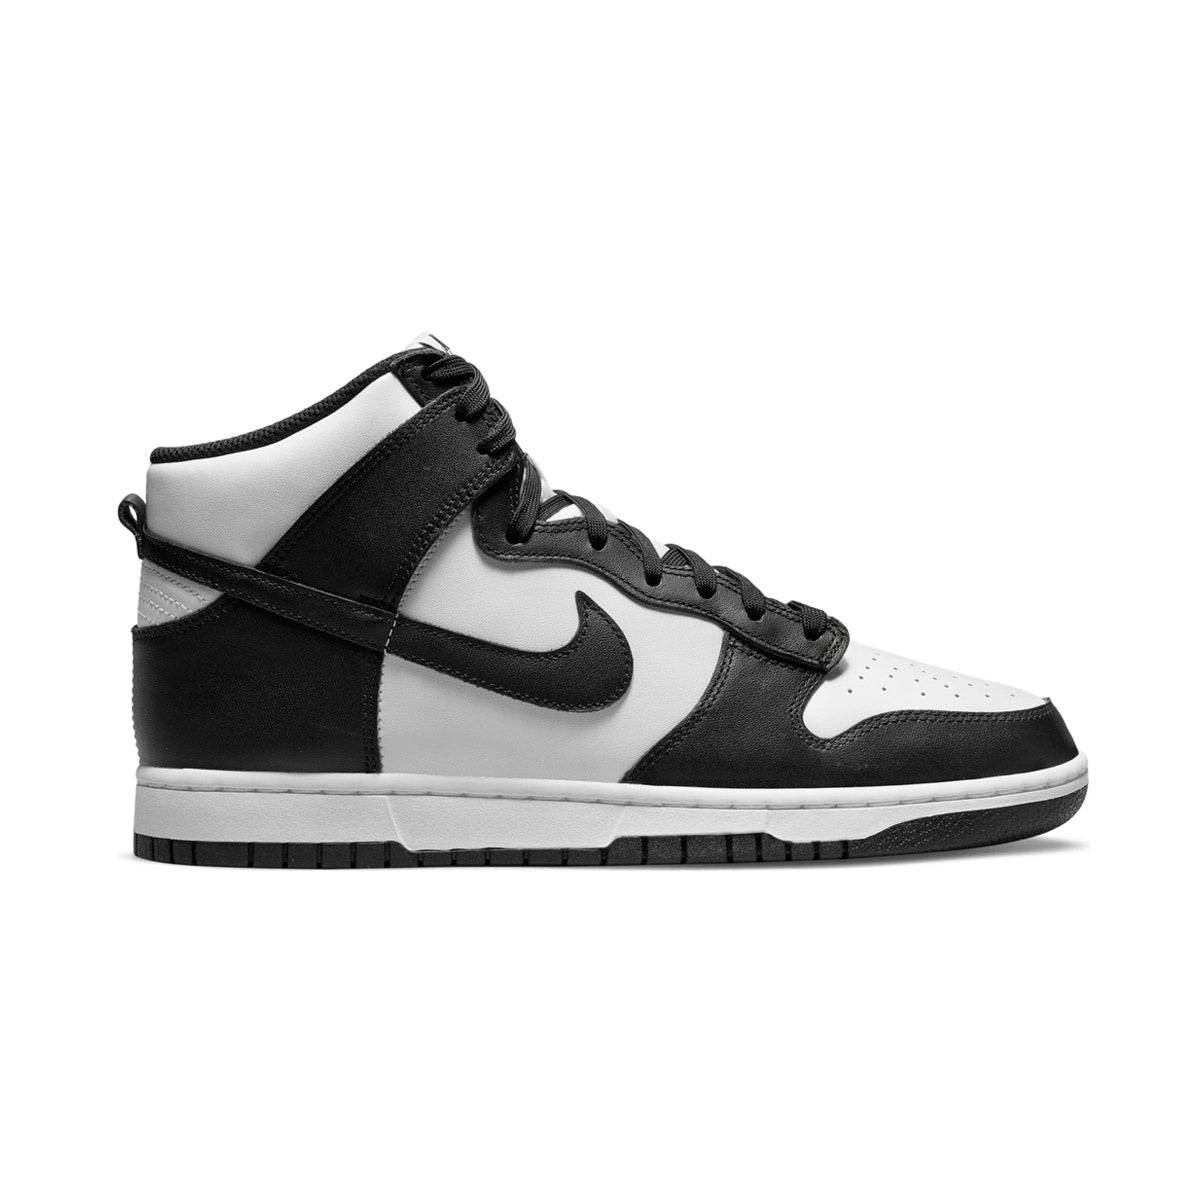 Nike mens air jordan reveal 834064-003 gray basketball shoes sneakers Men's Shoe